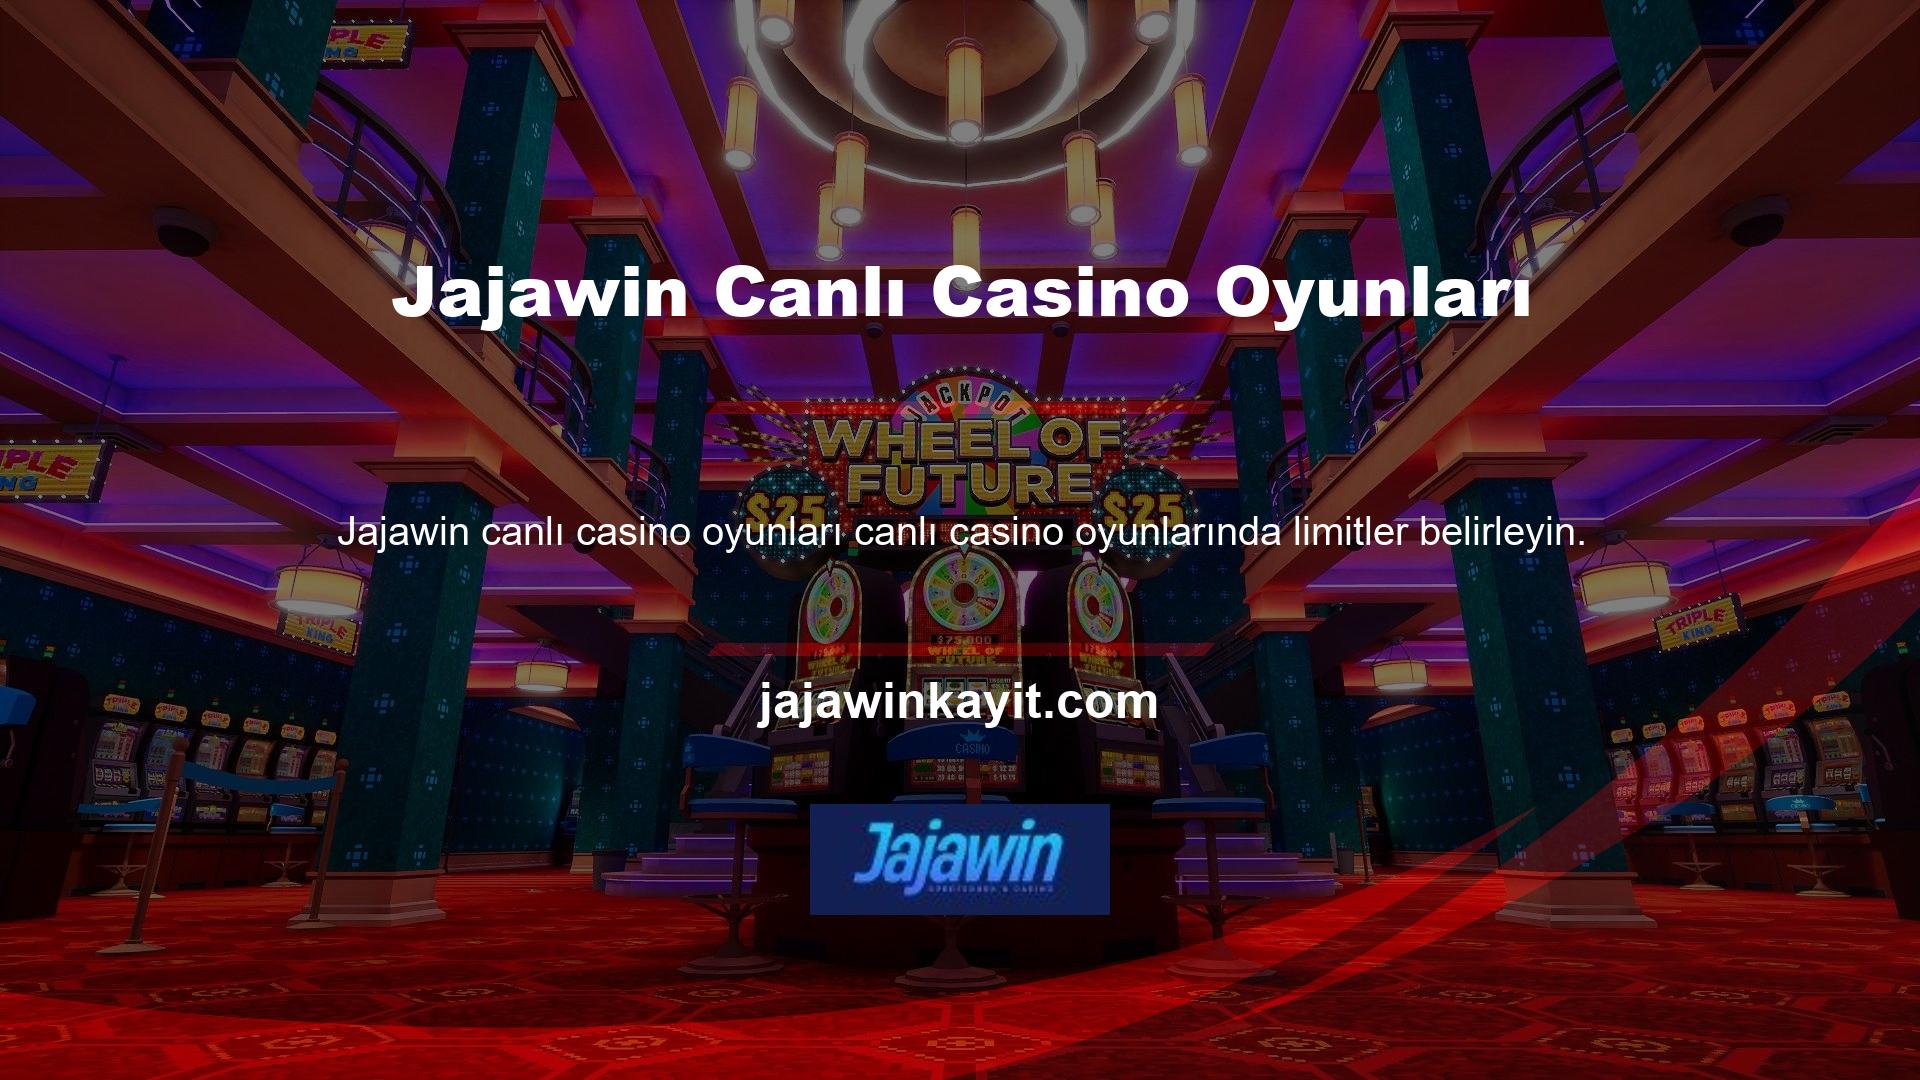 Jajawin web sitesi sizlere kısa sürede büyük başarılara imza atma fırsatı sunuyor